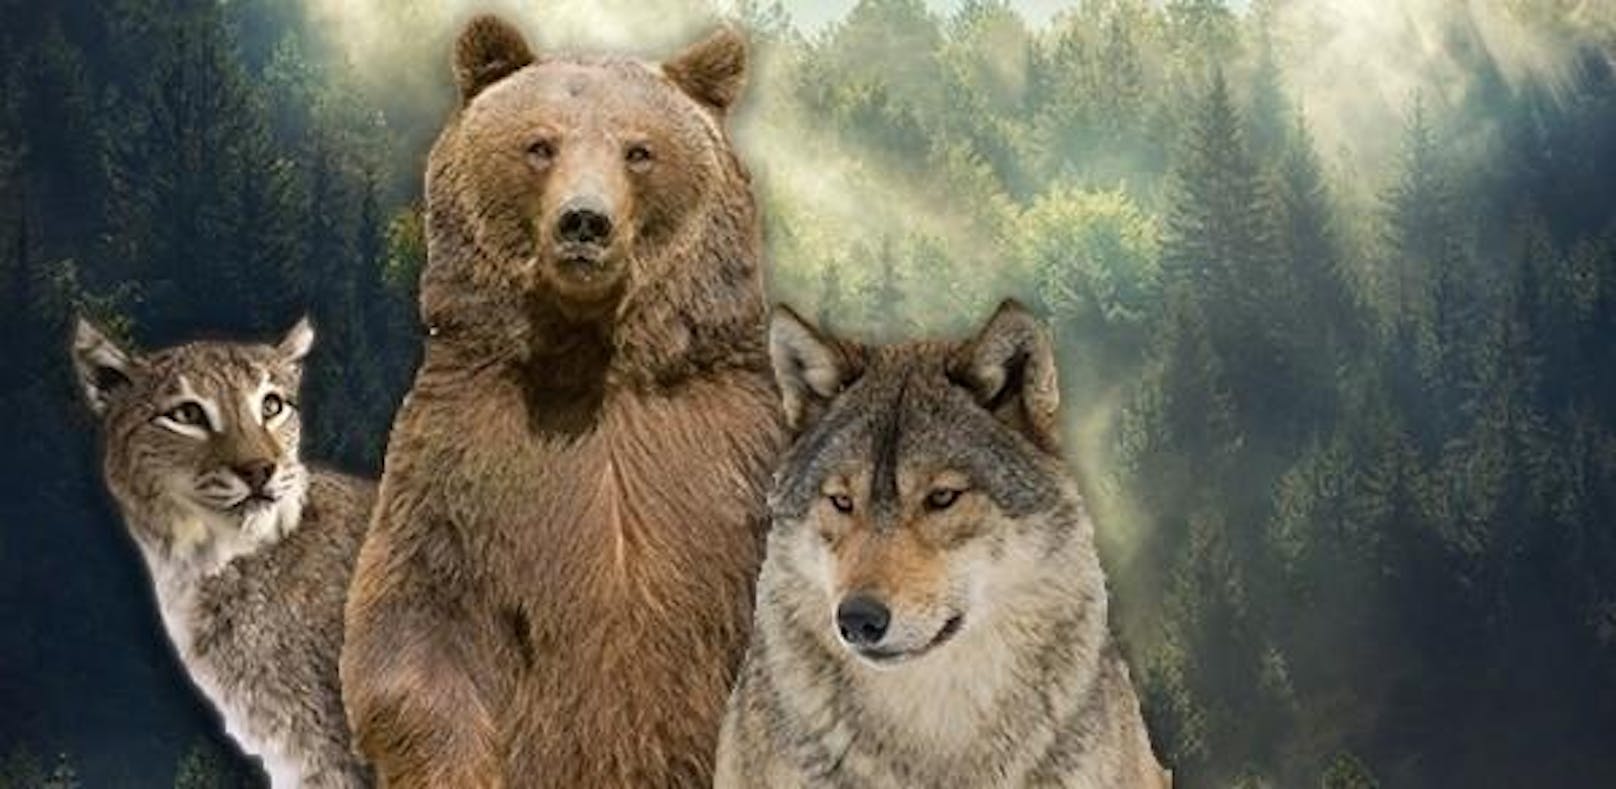 WWF Österreich, Tiroler Jägerverband und Naturschutzbund Österreich gründen Allianz und sagen illegaler Wilderei in Tirol den Kampf an.